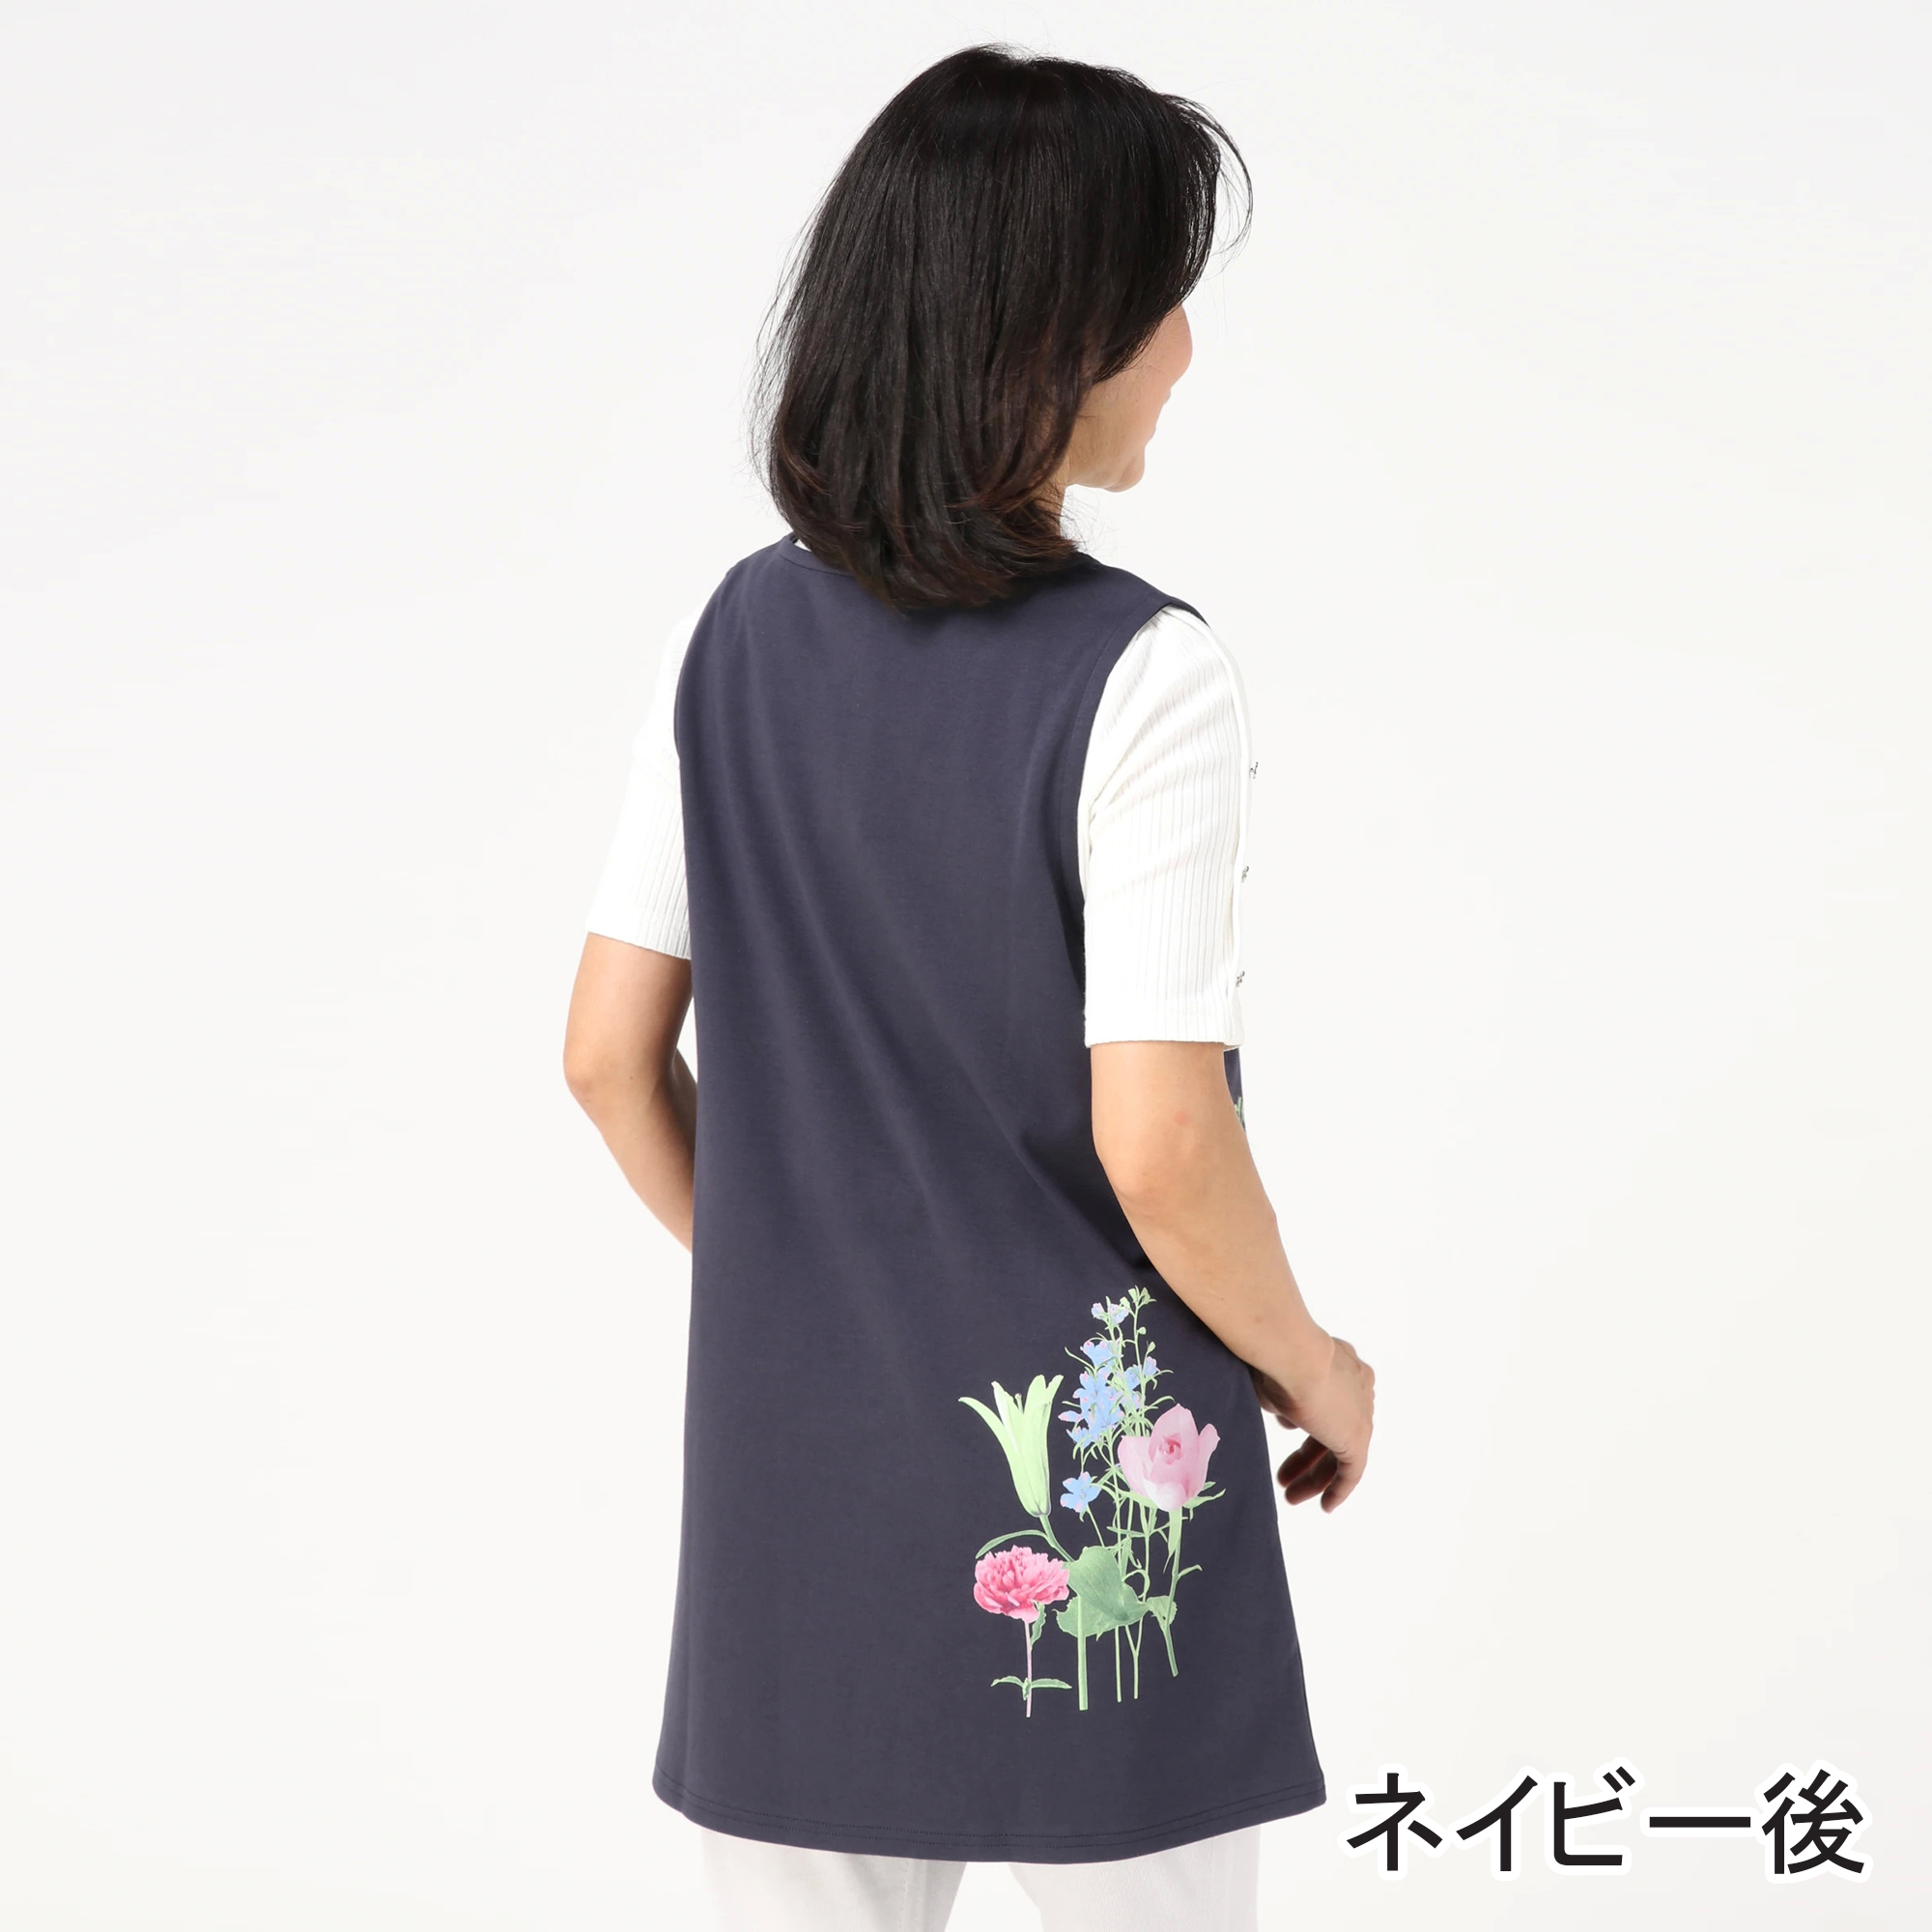 【公式】Fairy Style collection(フェアリースタイル) / フラワー丸首ベストチュニック